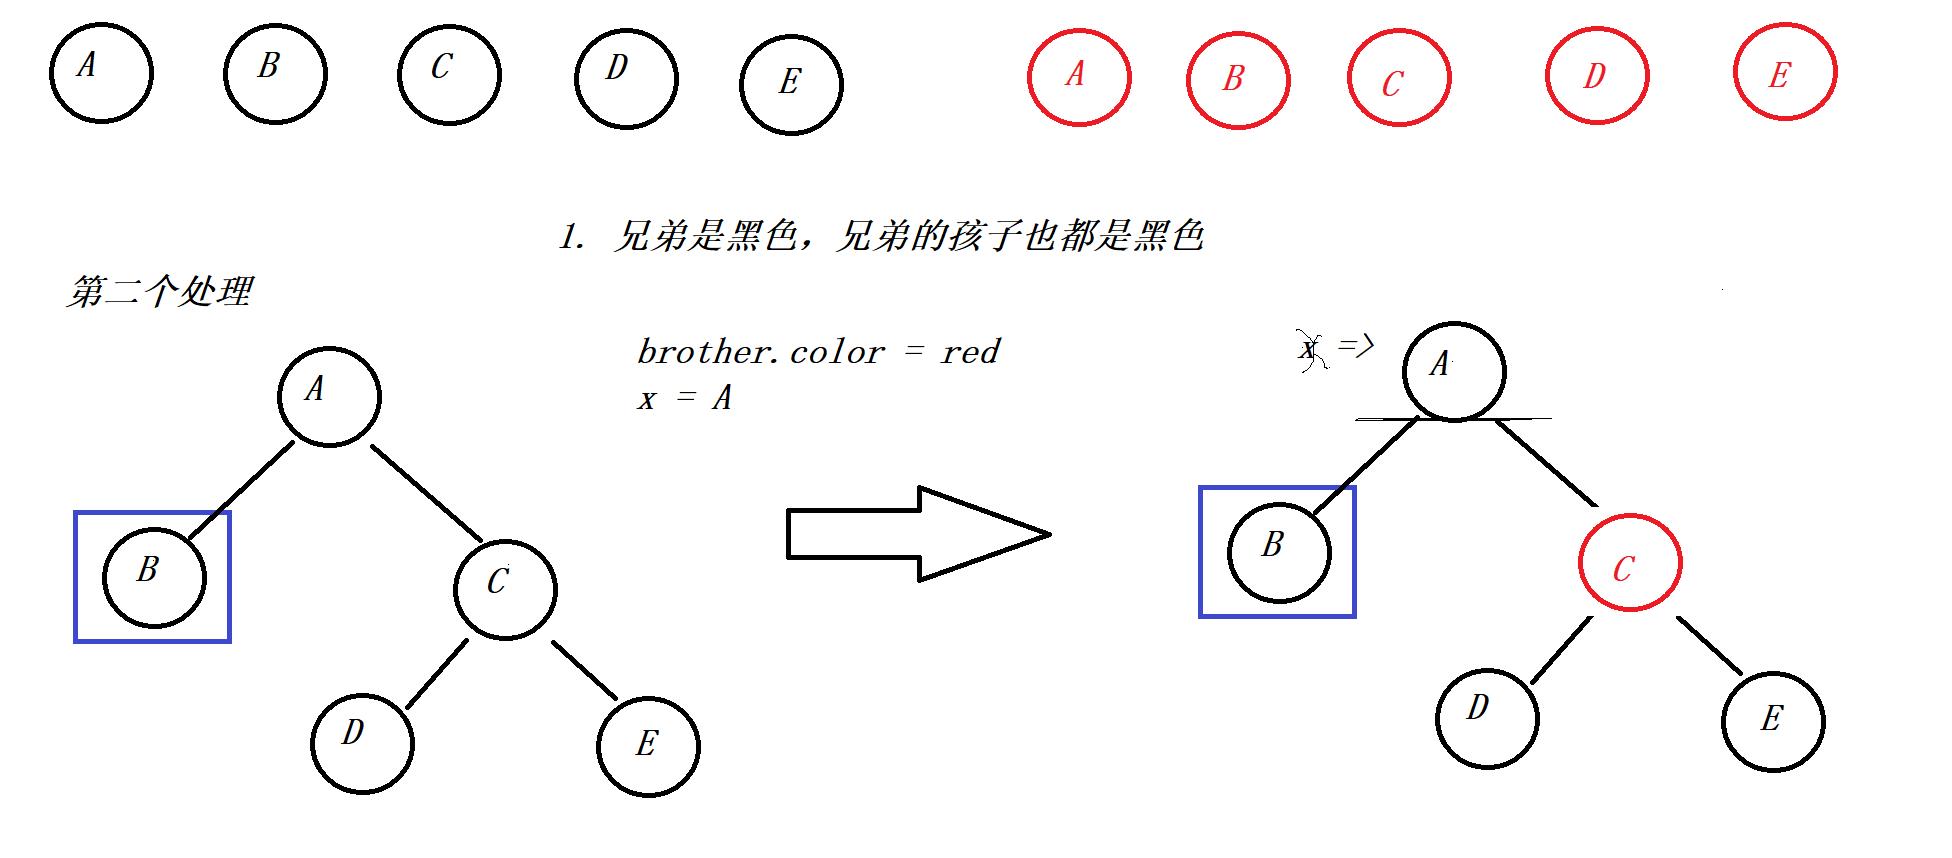 【Java】红黑树的删除操作概述和代码实现 - 文章图片